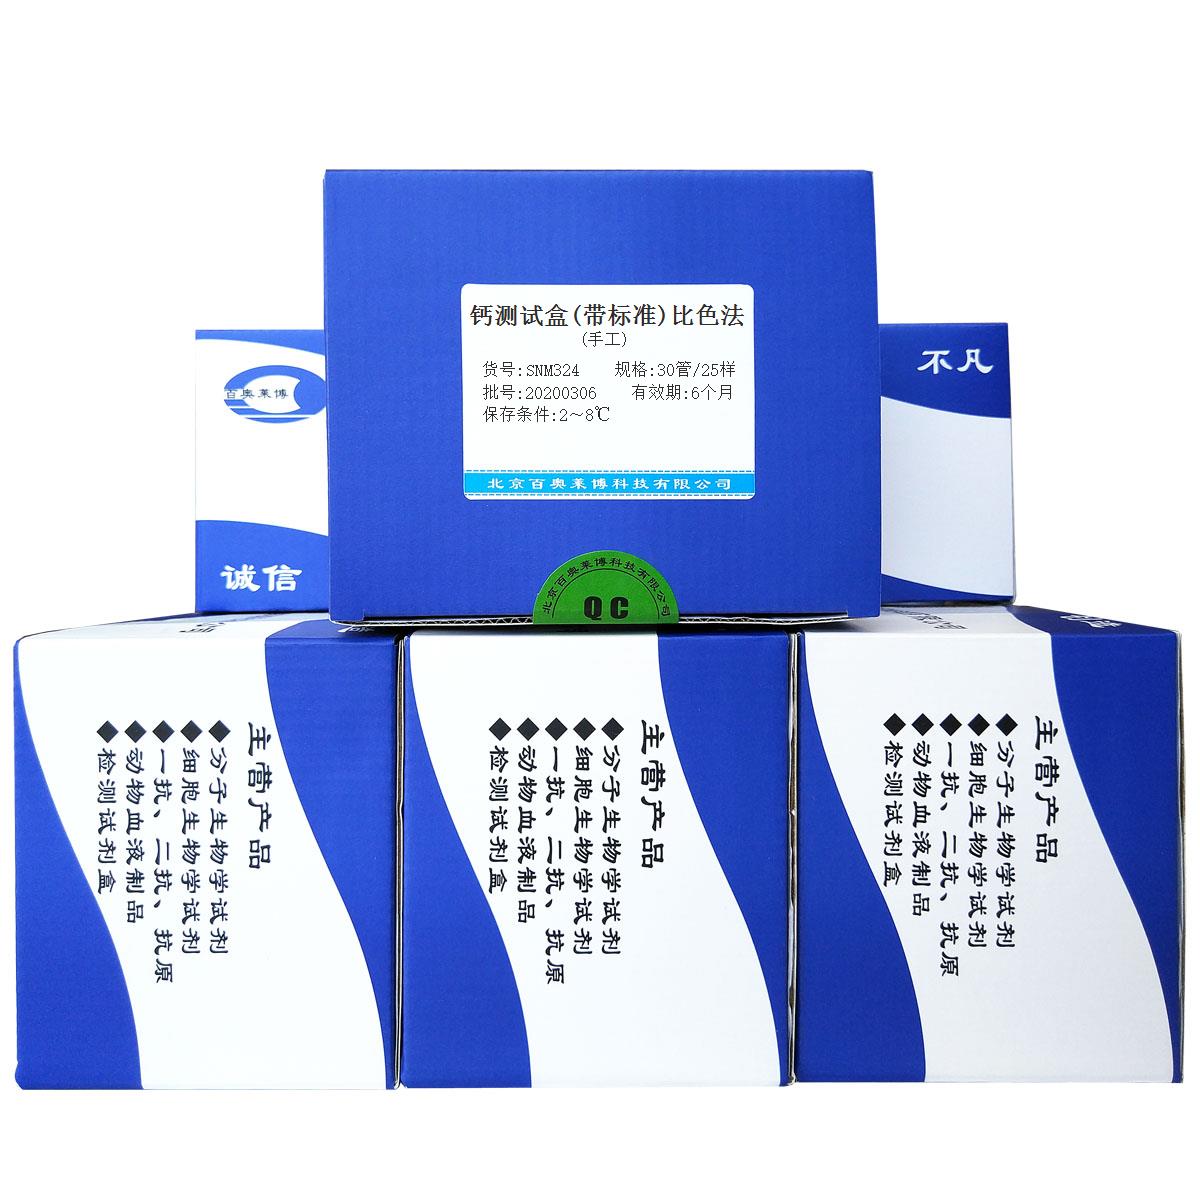 钙测试盒(带标准)比色法(手工)北京供应商